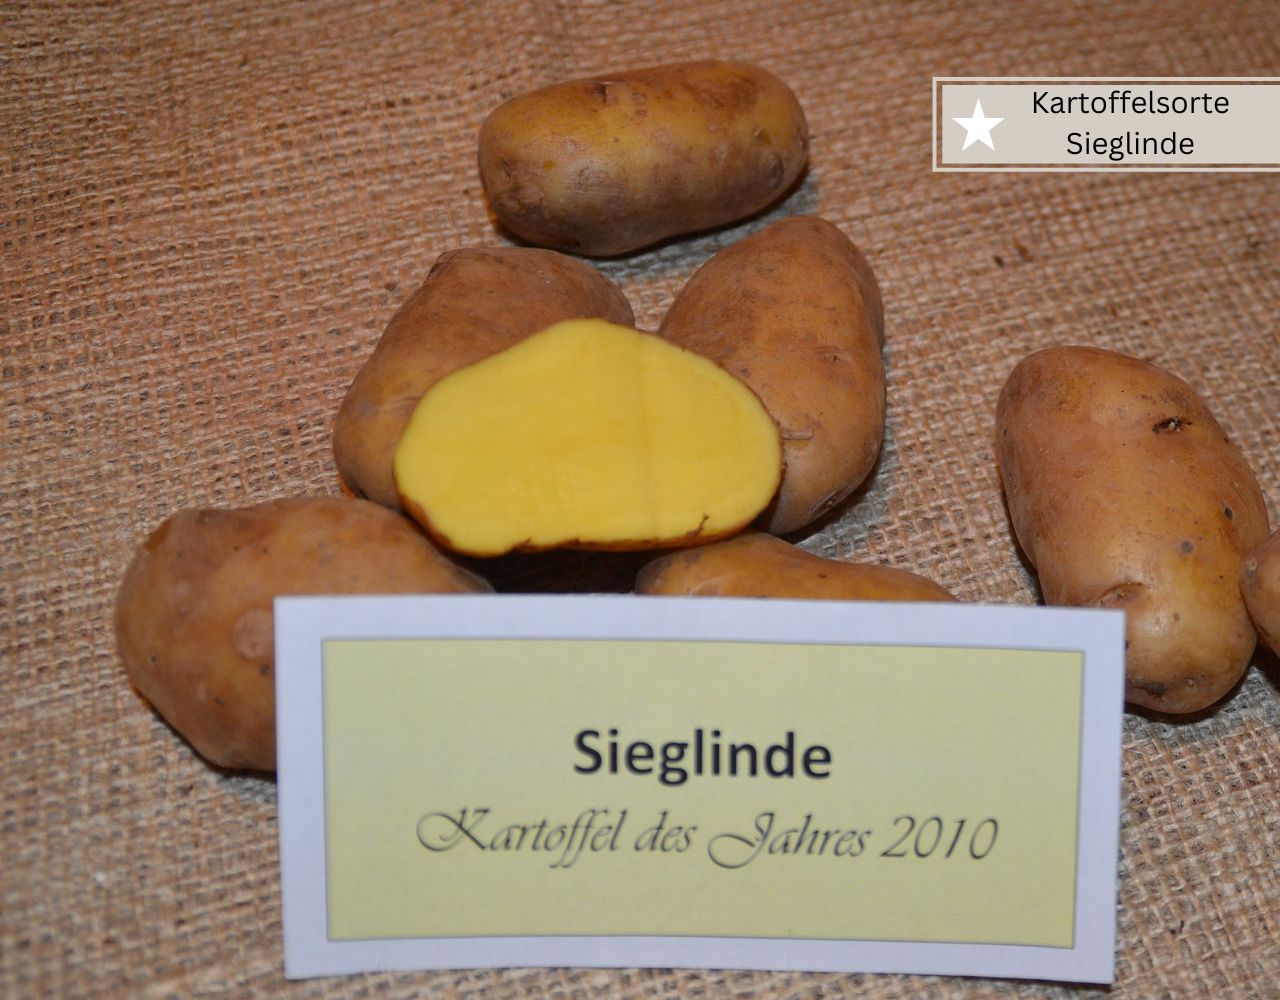 Kartoffelsorte Sieglinde